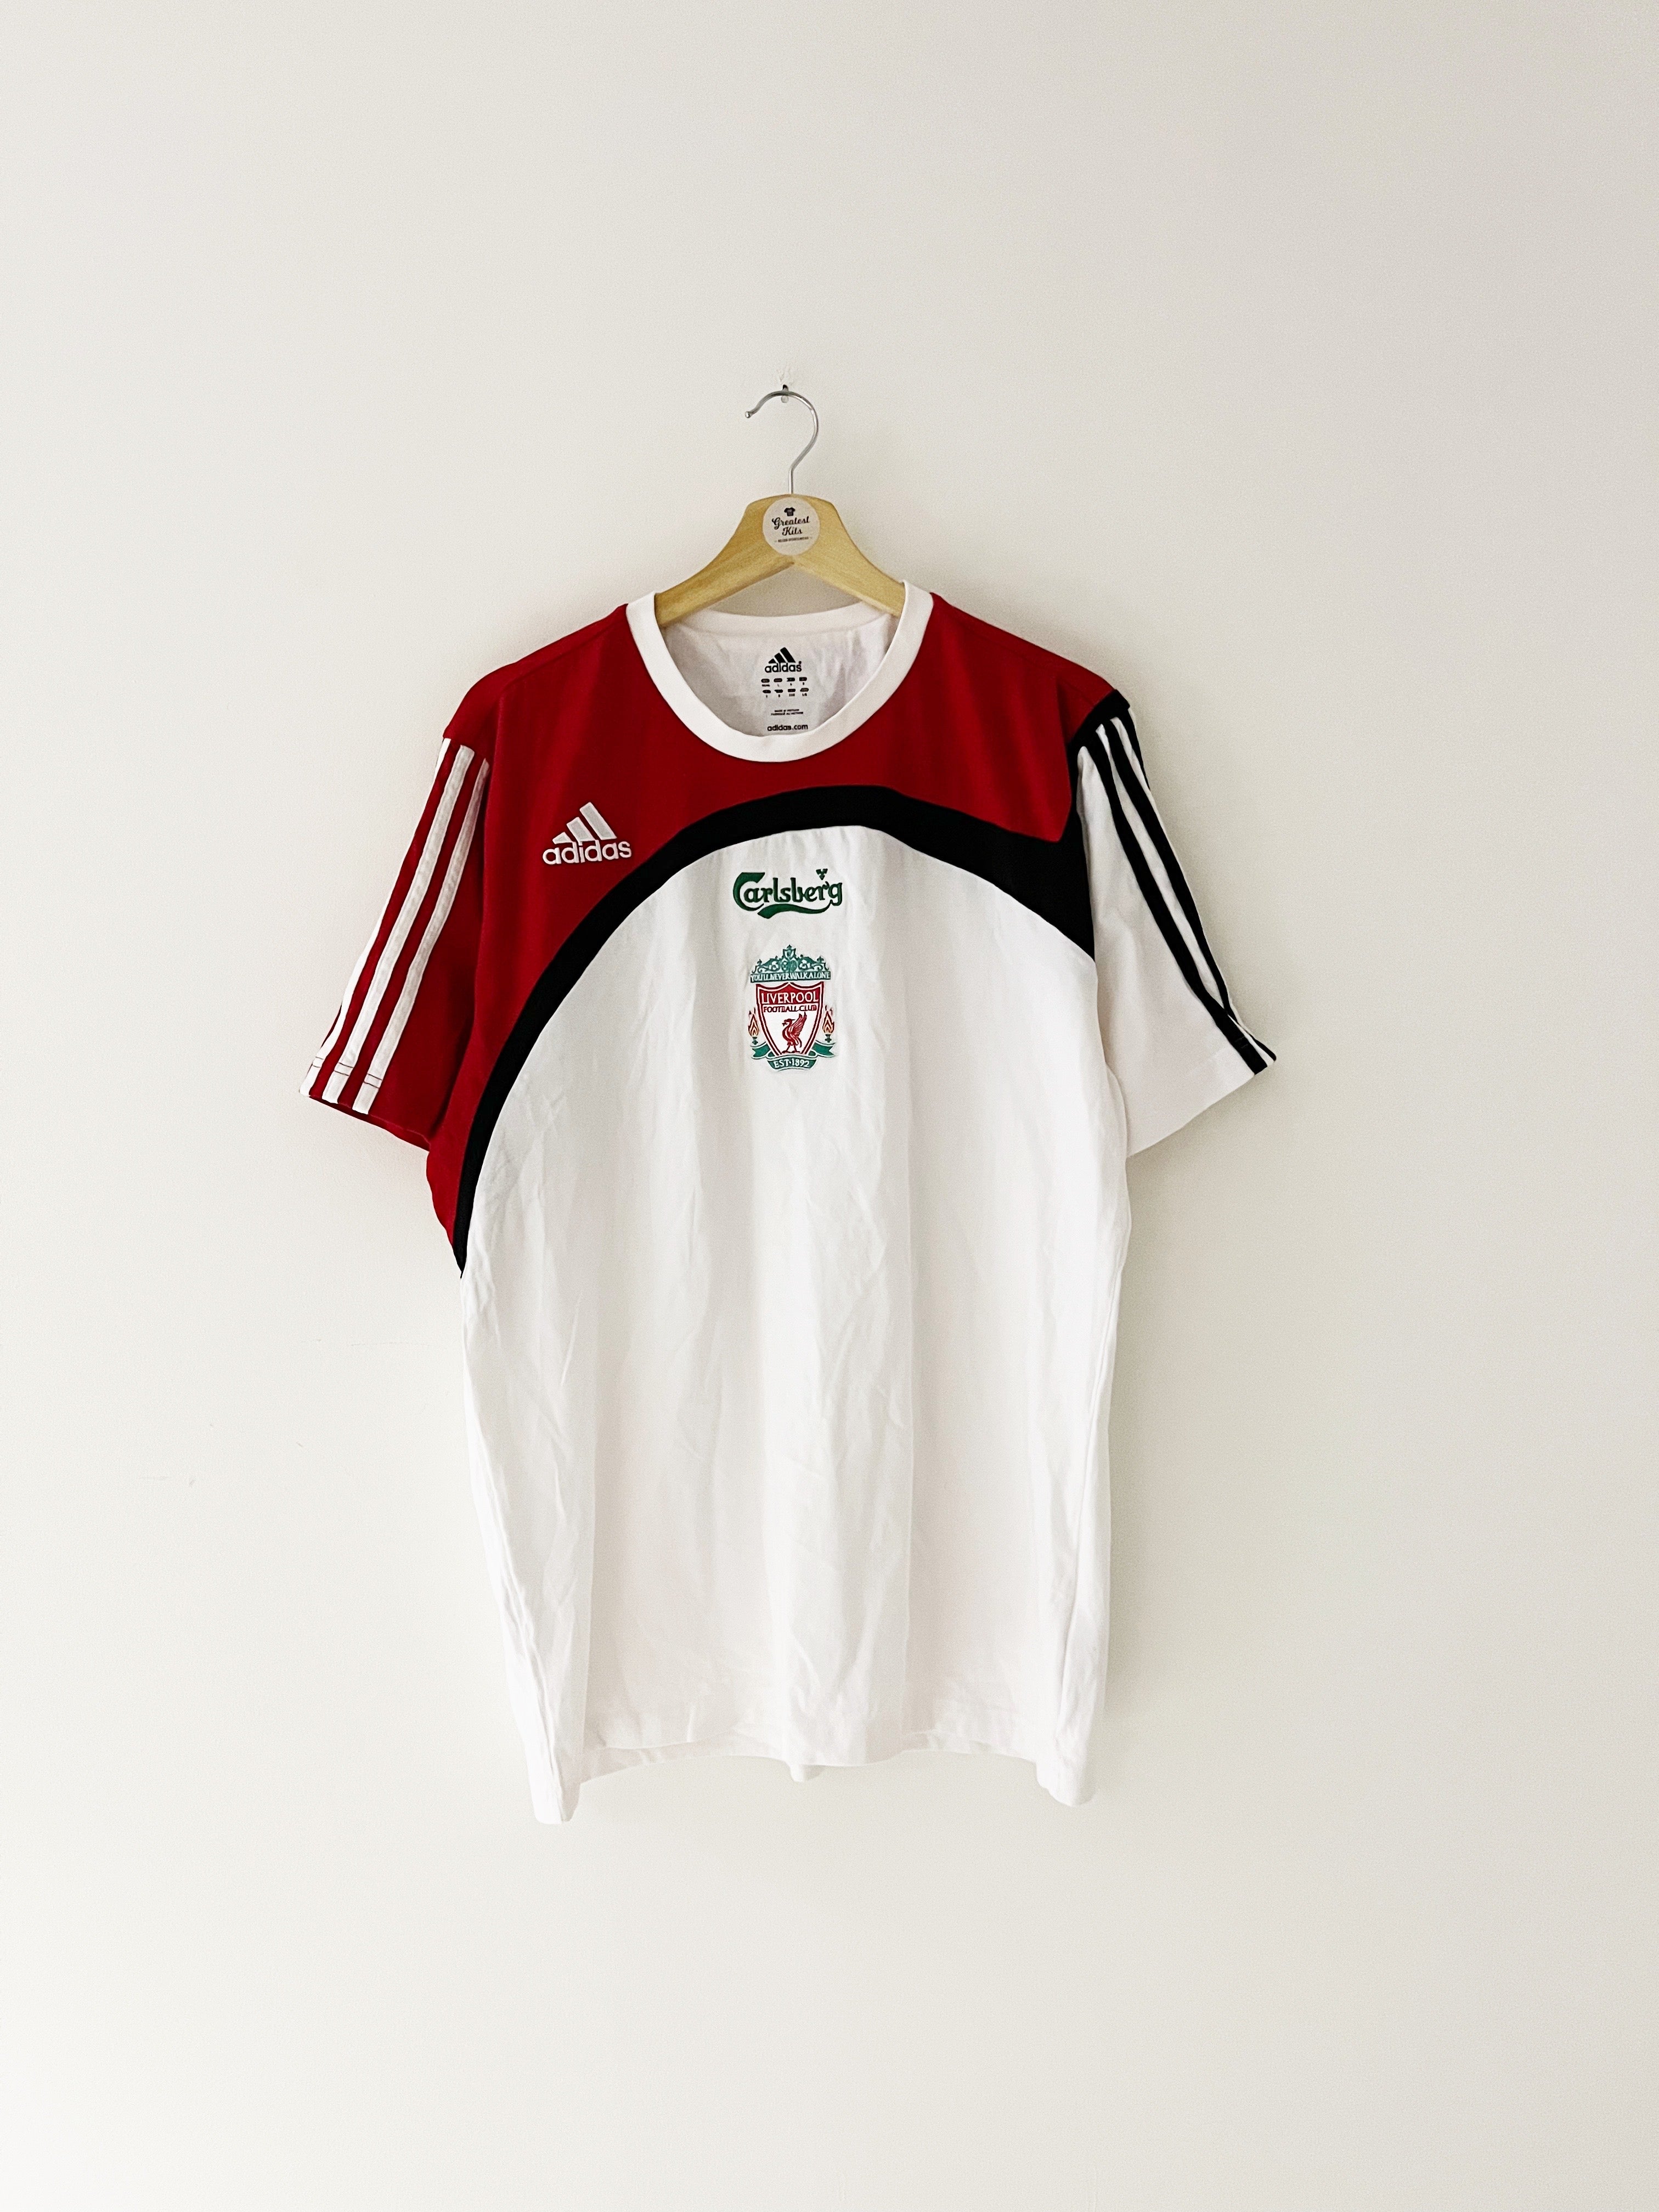 2007/08 Liverpool Training T-Shirt (L/XL) 9.5/10